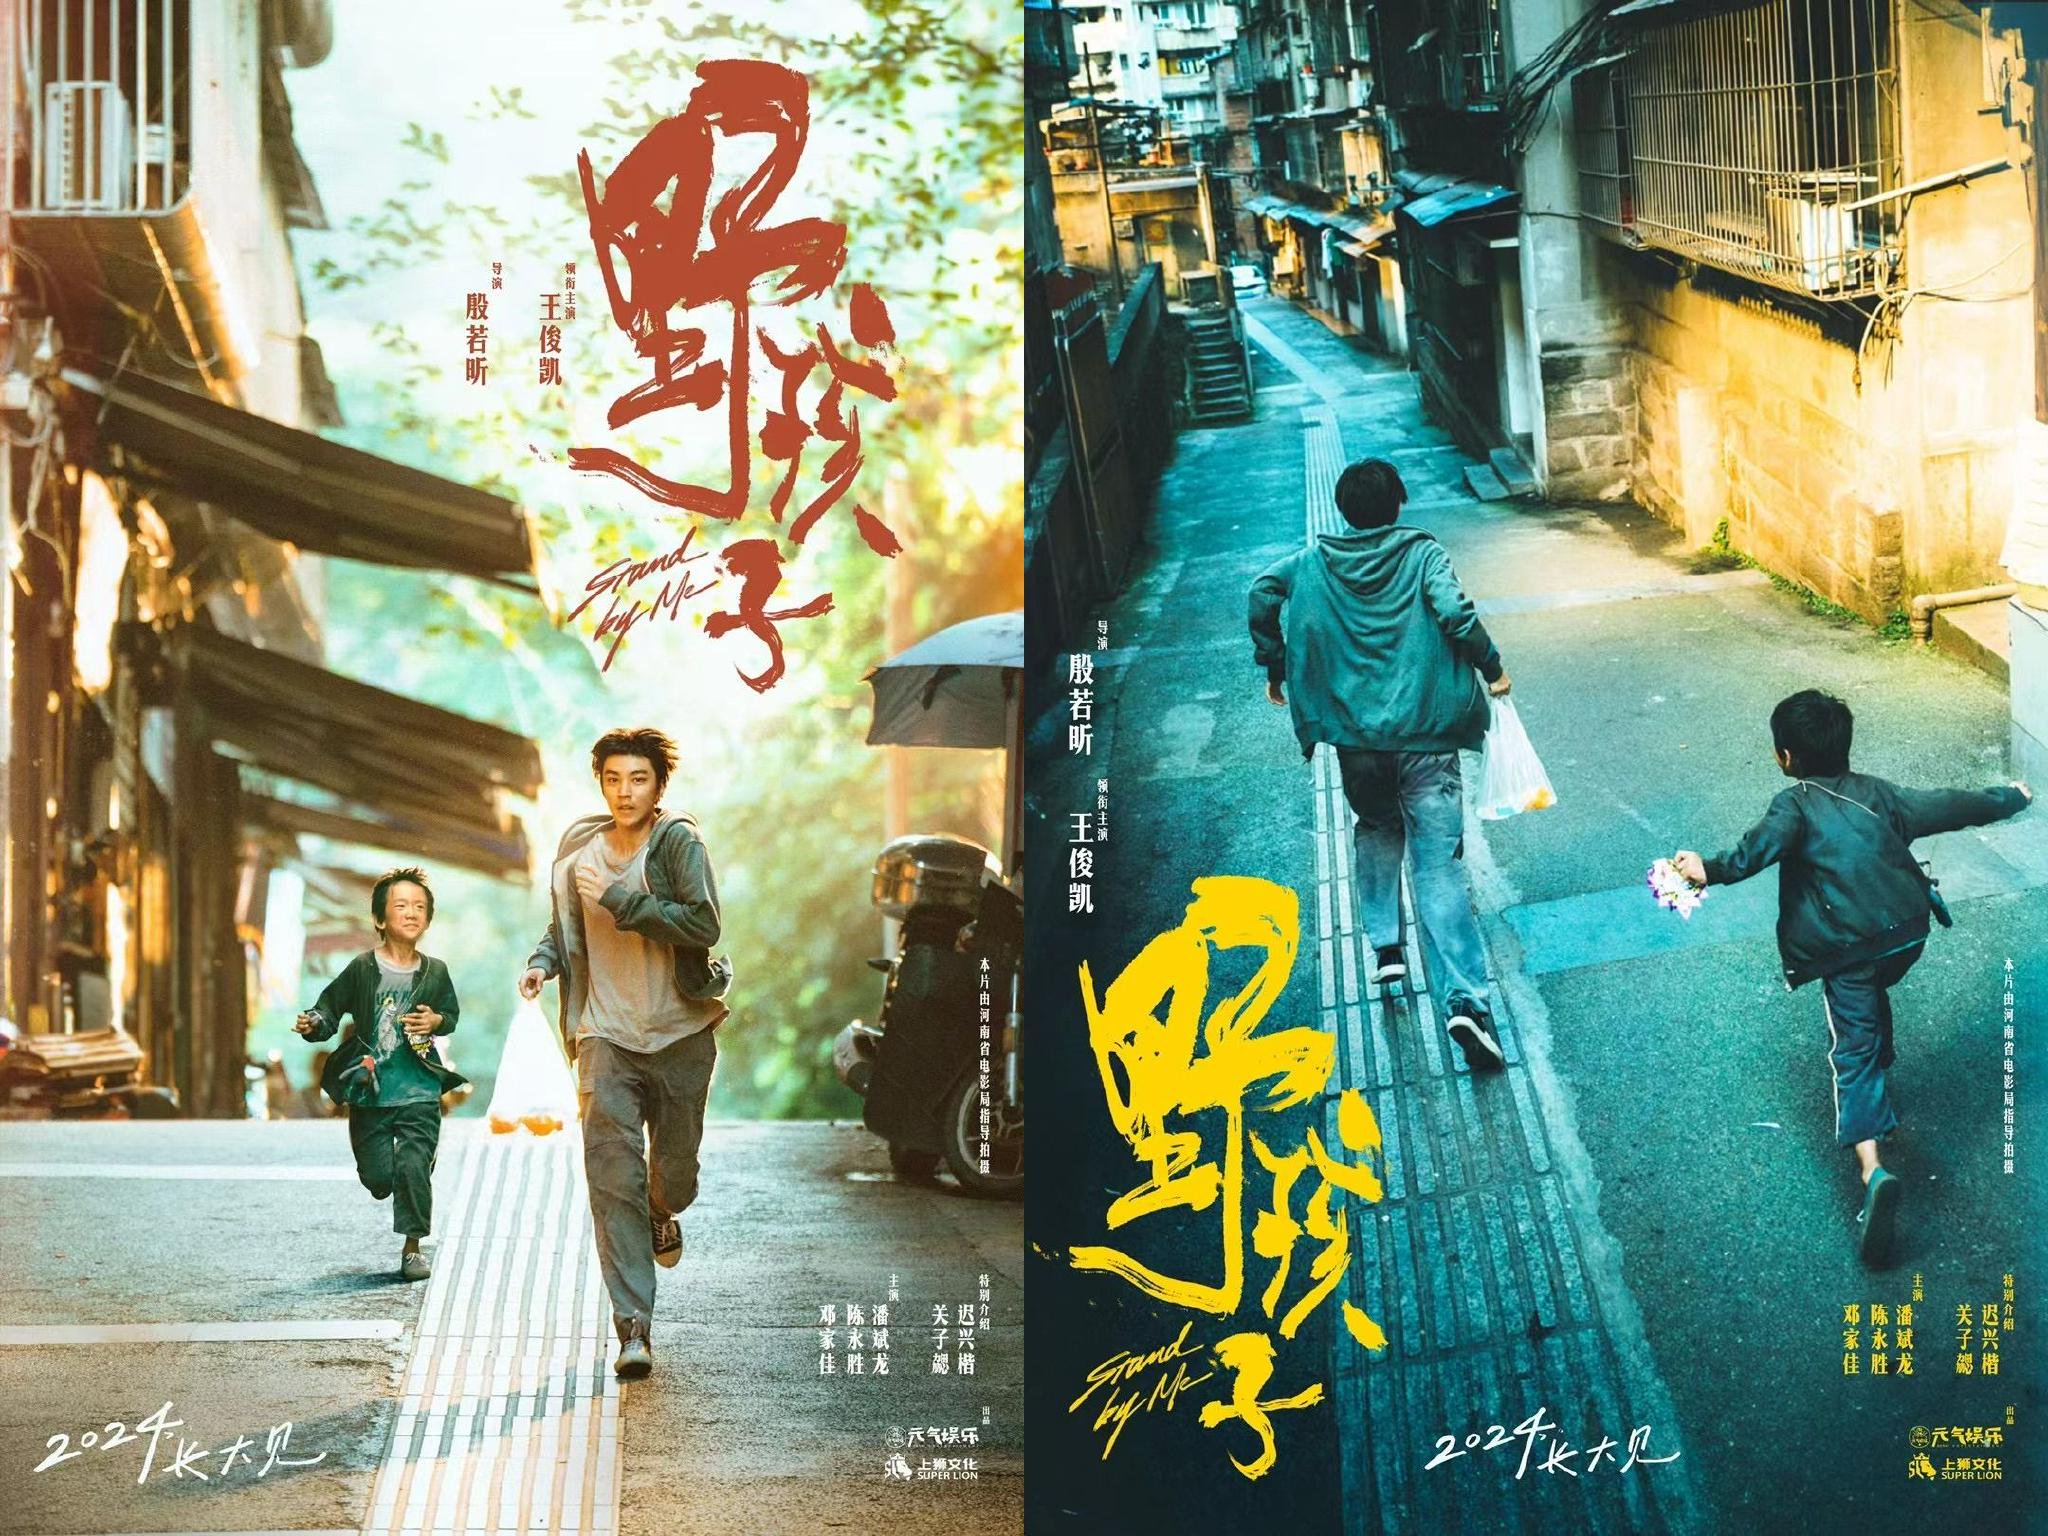 電影《野孩子》發佈首款海報，王俊凱的角色與造型也首次曝光。 片方供圖